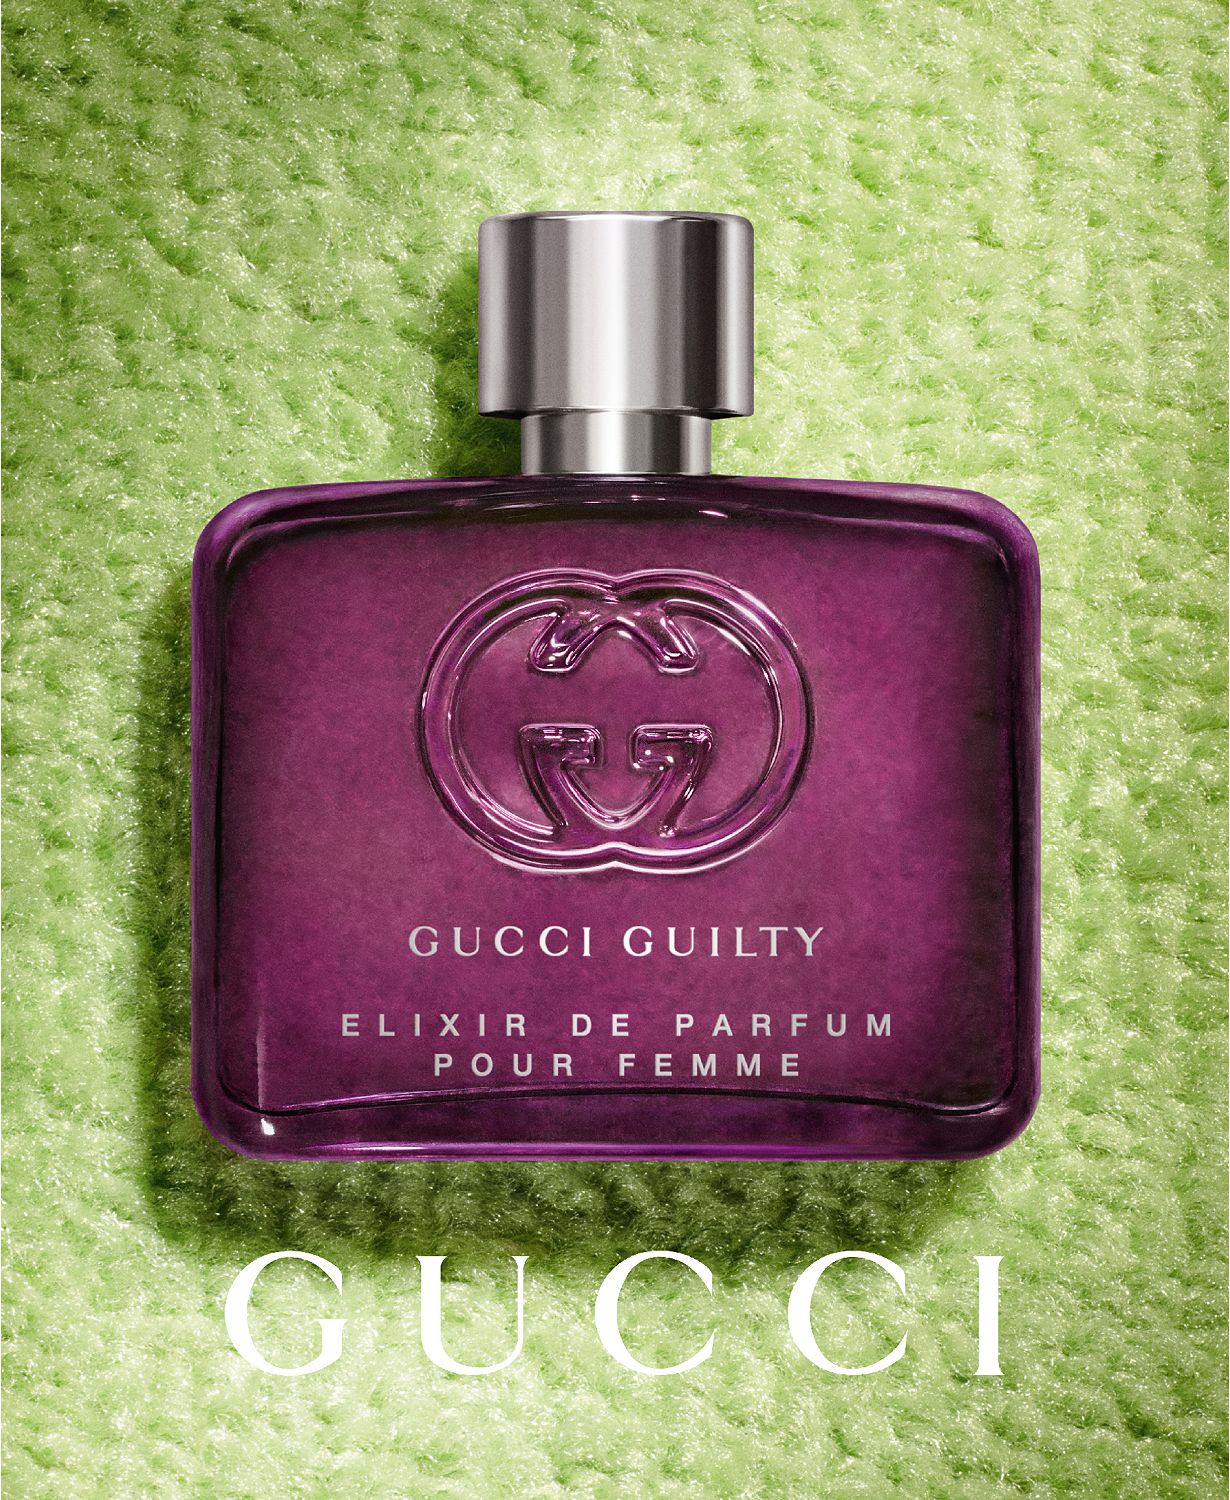 Guilty Elixir de Parfum Pour Femme, 2 oz.